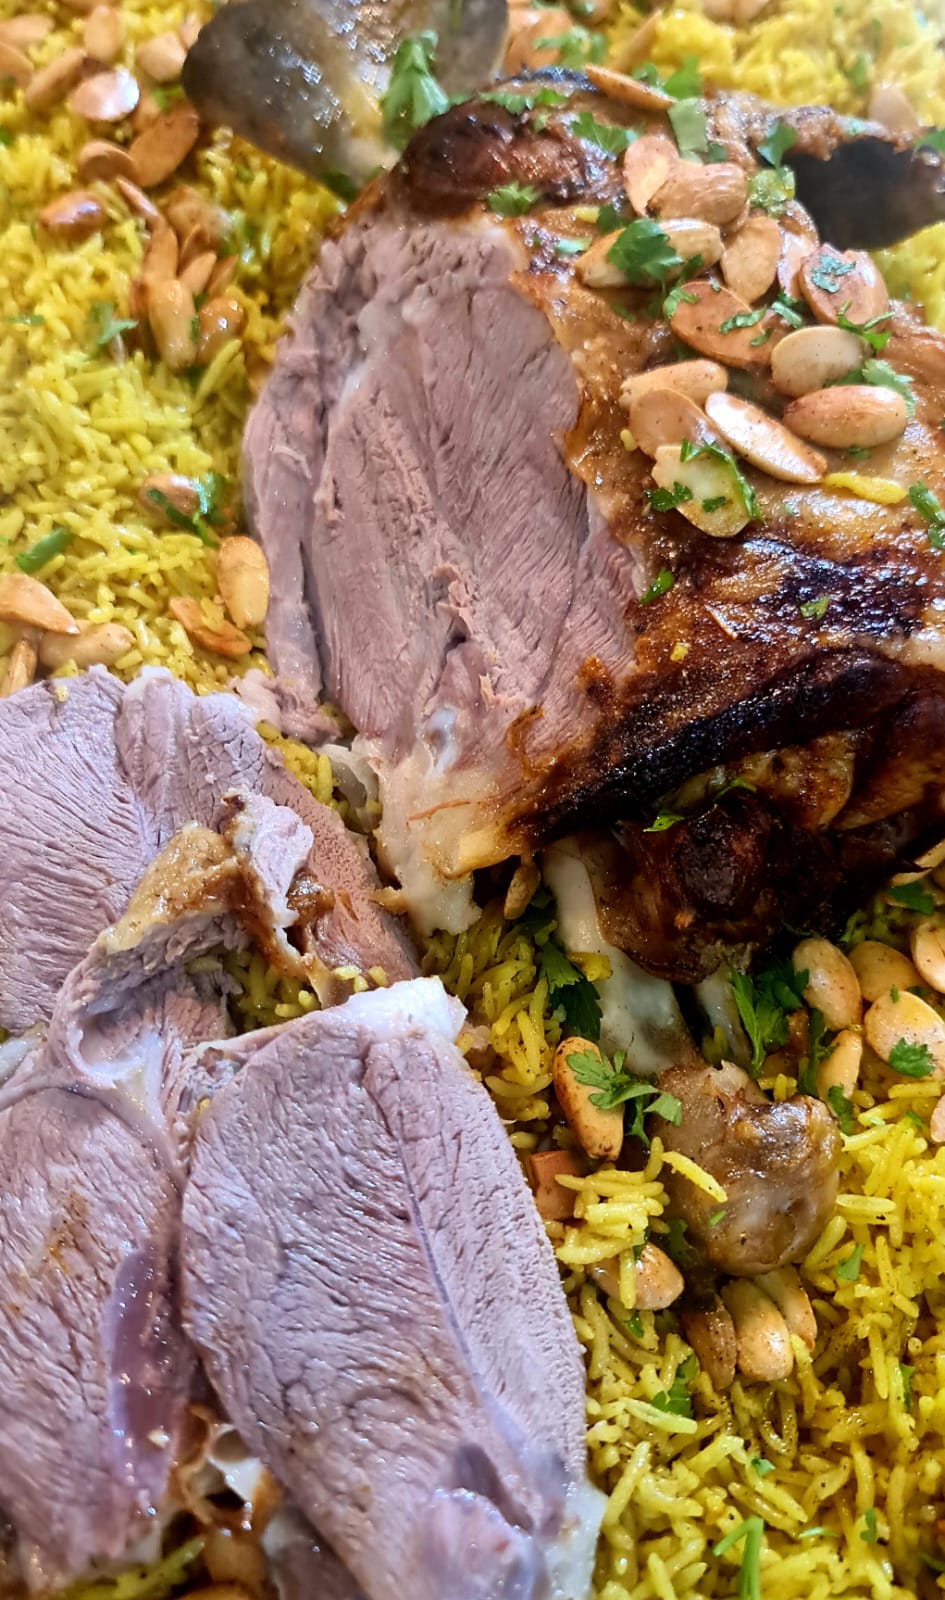 عروض وتخفيضات جديدة في مطعم طربوش بمناسبة حلول شهر رمضان  